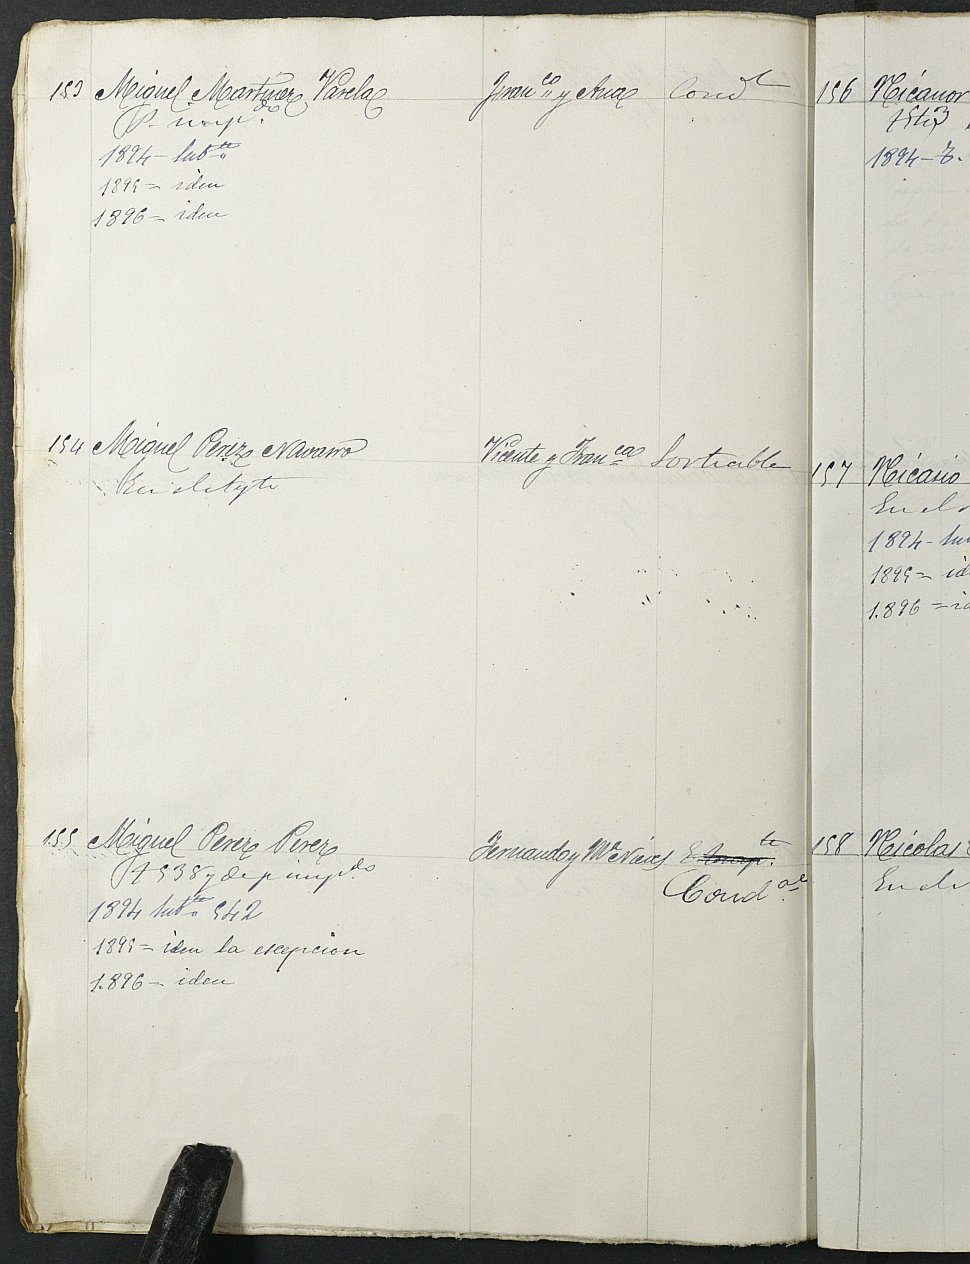 Relación de individuos declarados soldados e ingresados en Caja del Ayuntamiento de Yecla de 1893.